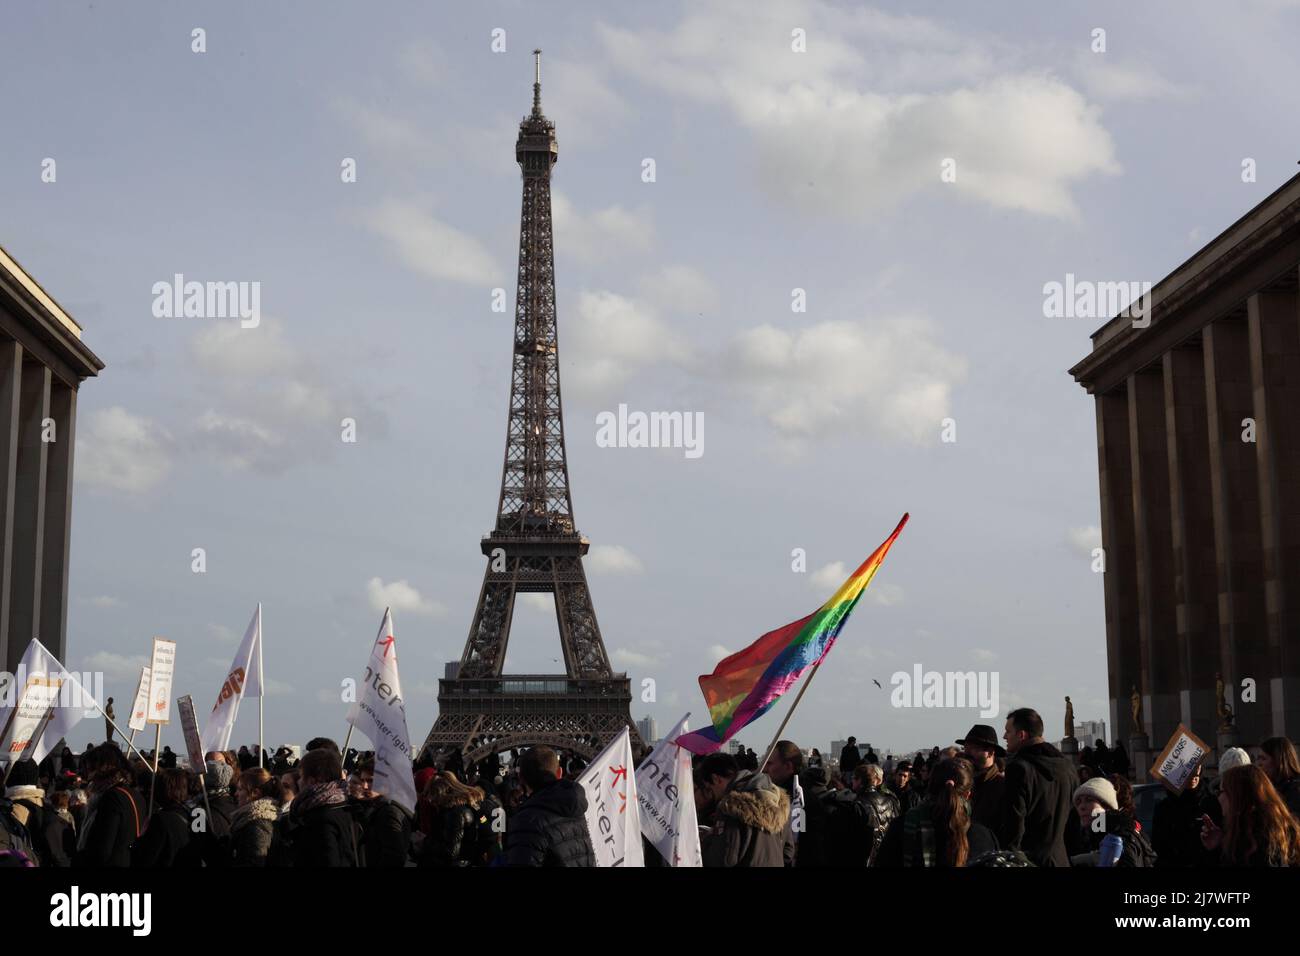 Paris : Manifestation contre le projet de loi anti-avortement en Espagne 01er février 2014. Tour Eiffel. Drapeau espagnol Stockfoto